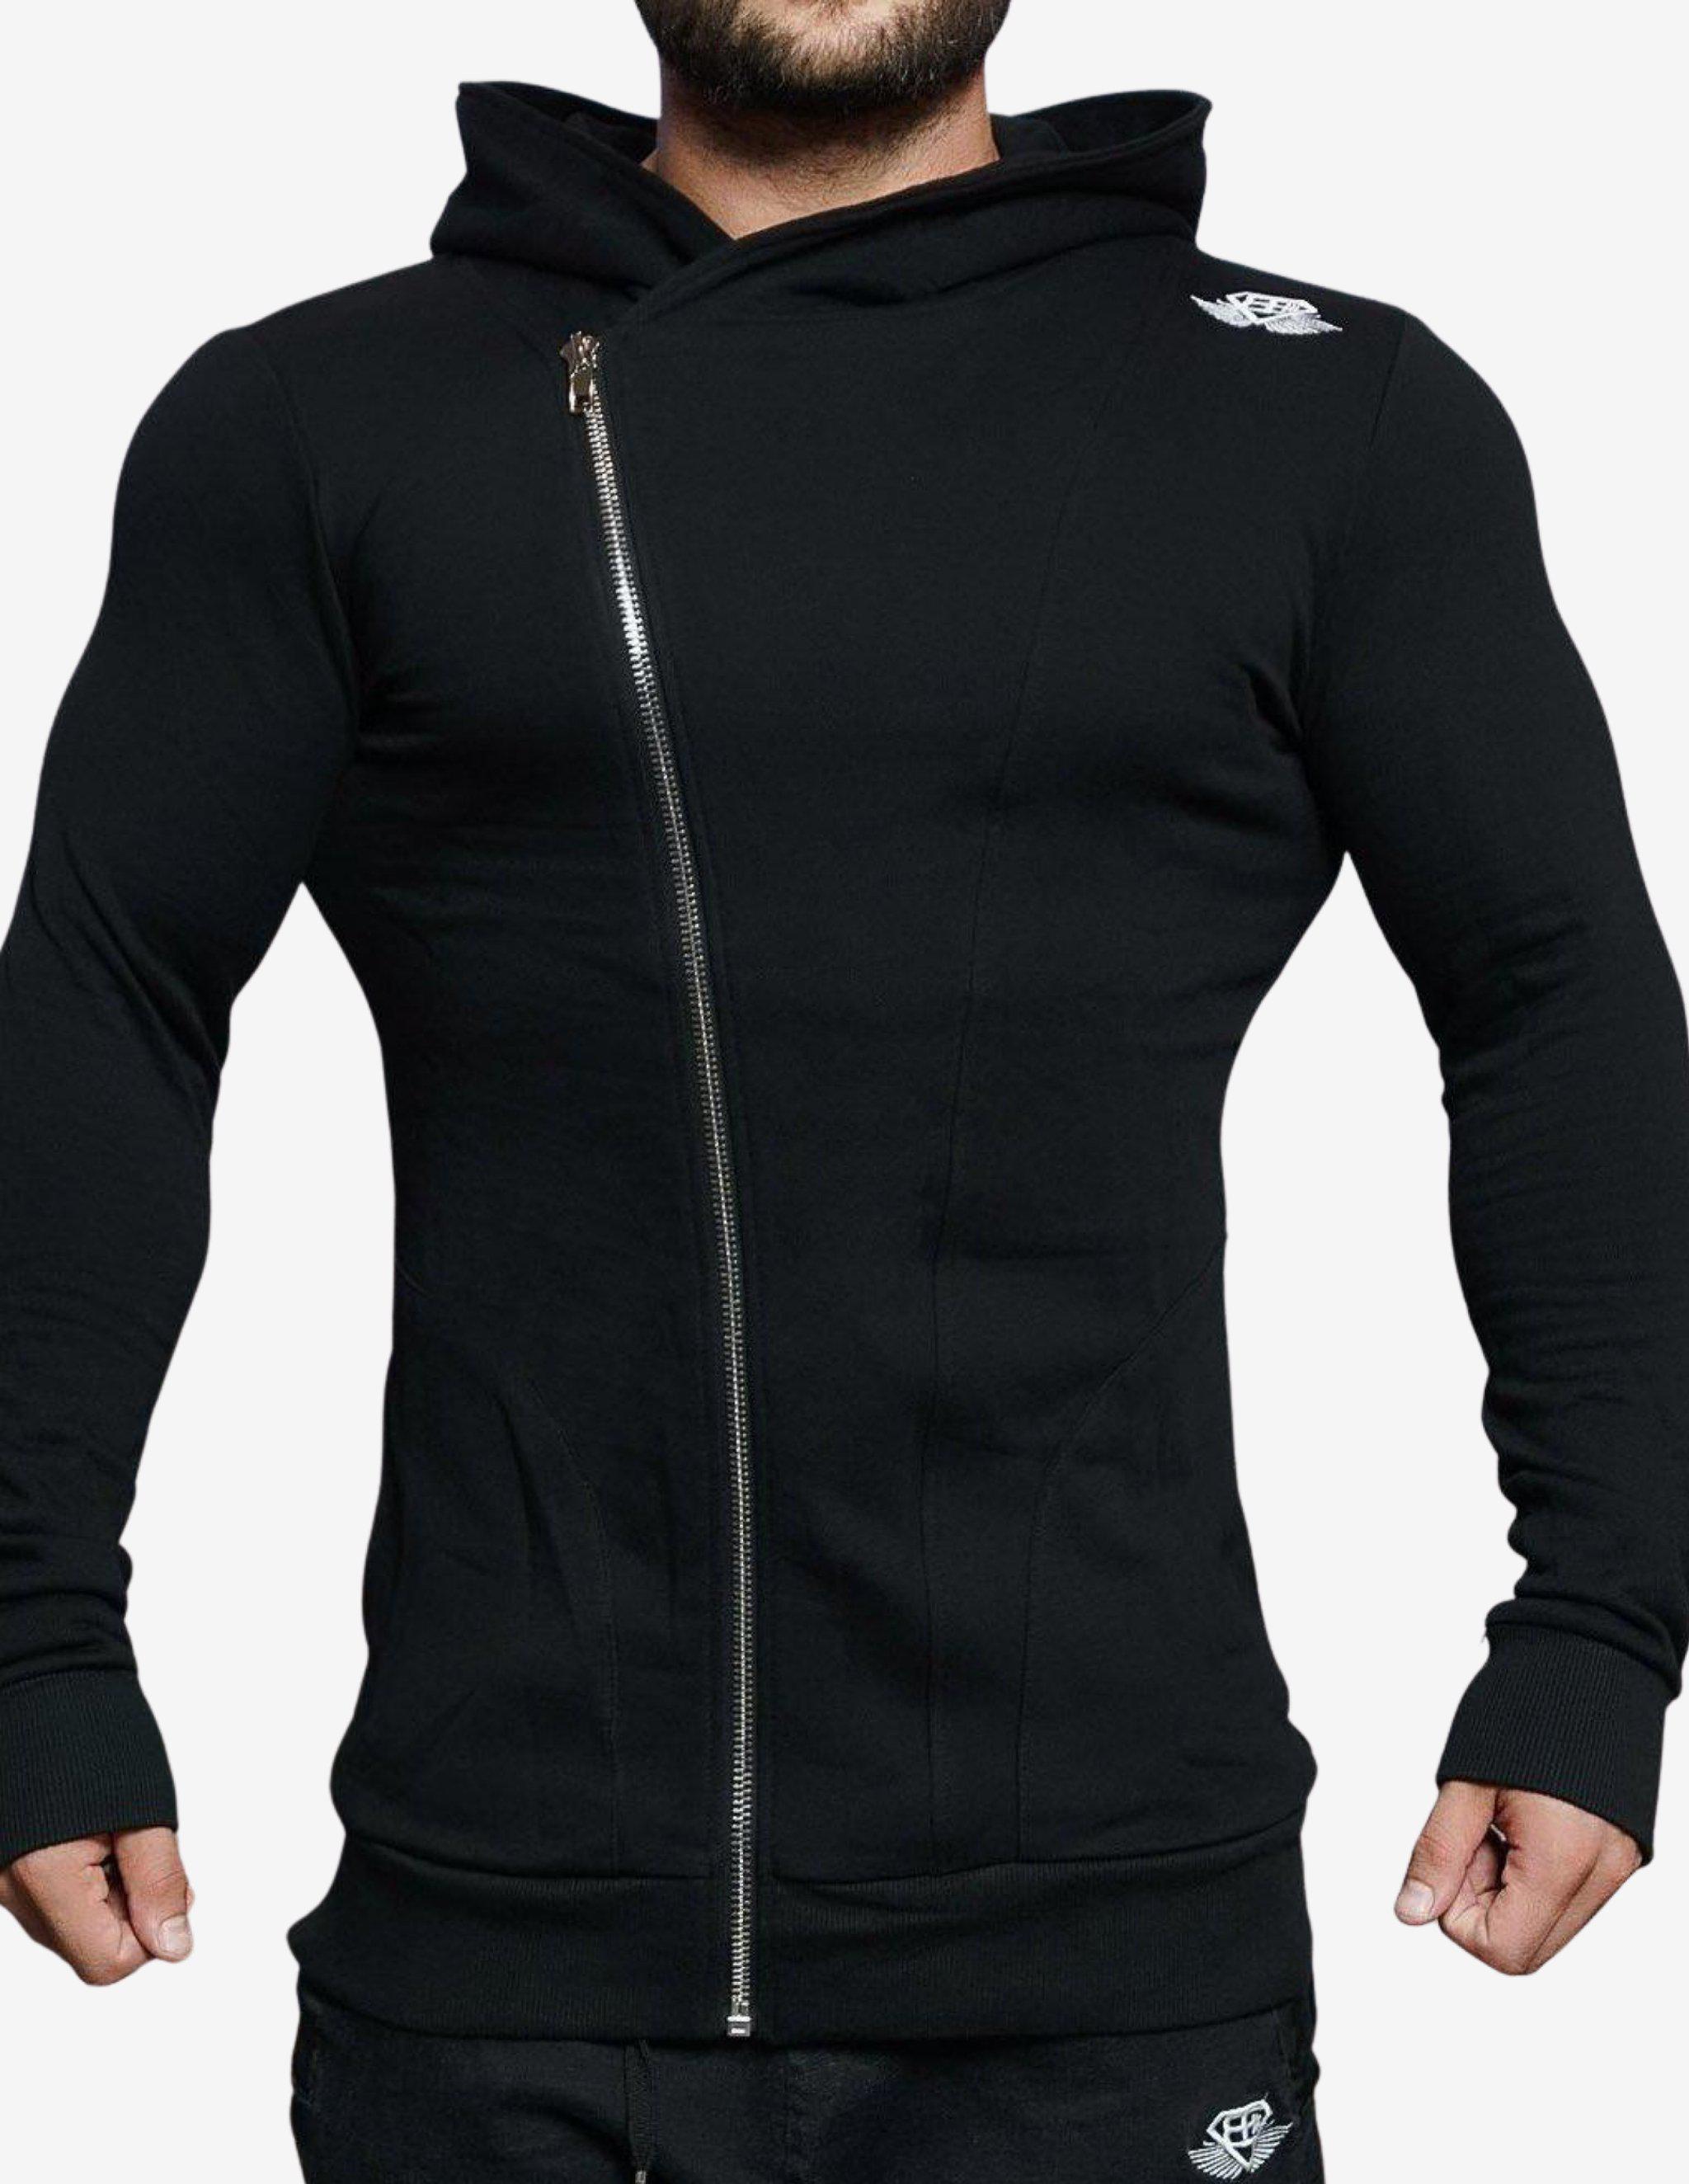 XA1 vest – BLACK OUT-Hoodie Man-Body Engineers-Guru Muscle